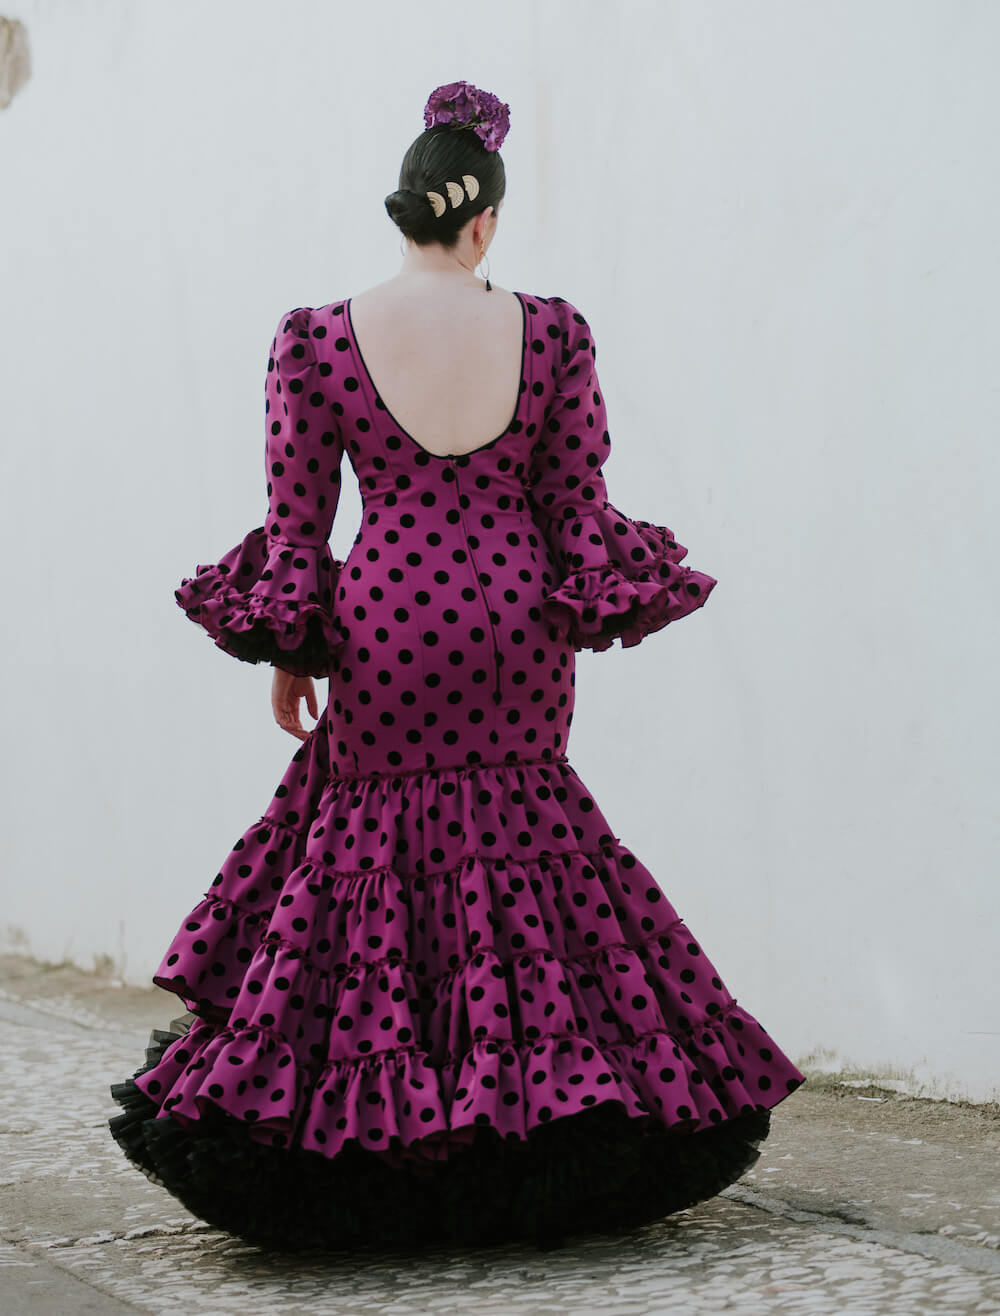 Isabel hernandez artesania_flamenca_batas_flamencas_modelo encanto-8